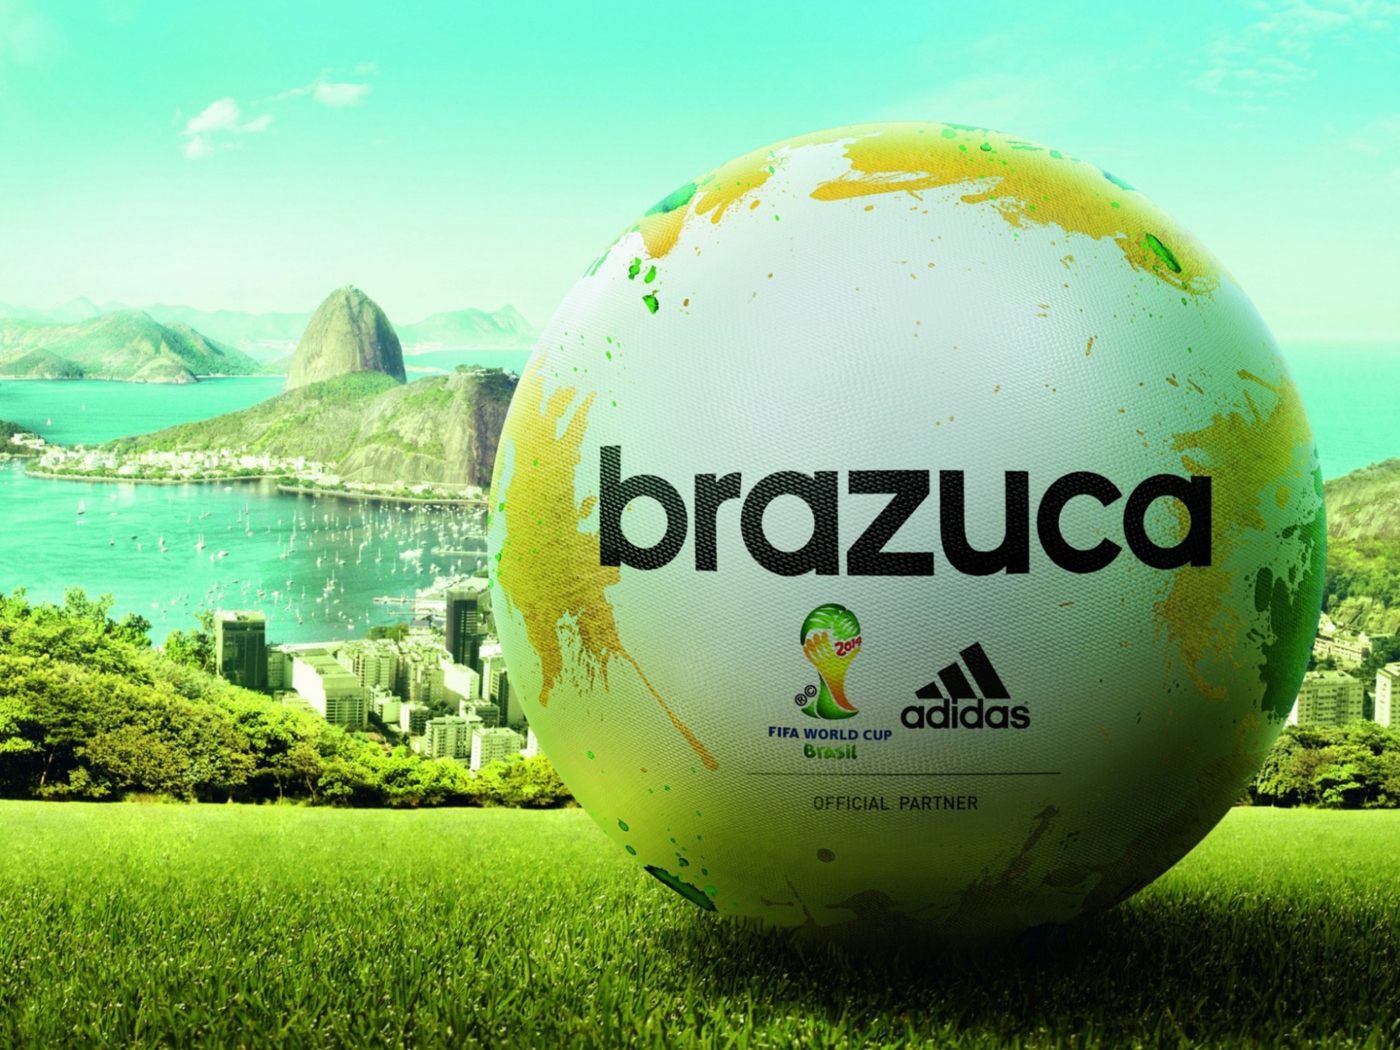 Das Adidas Brazuca Match Ball FIFA World Cup 2014 Wallpaper 1400x1050